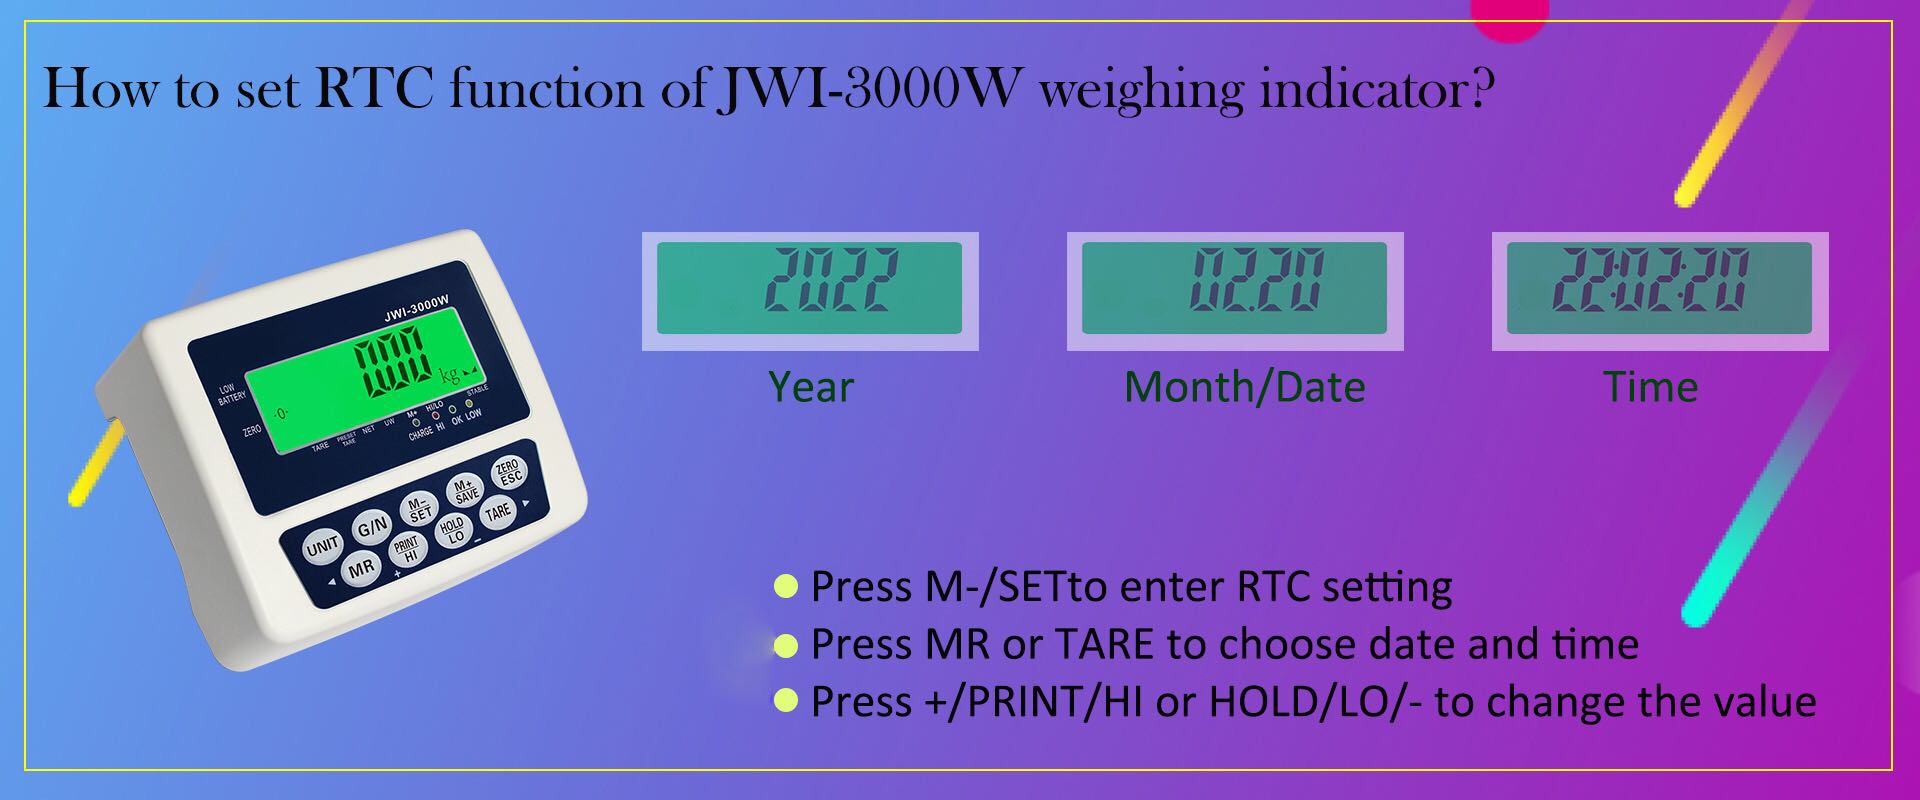 כיצד להגדיר את פונקציית RTC של מחוון השקילה התעשייתי JWI-3000W